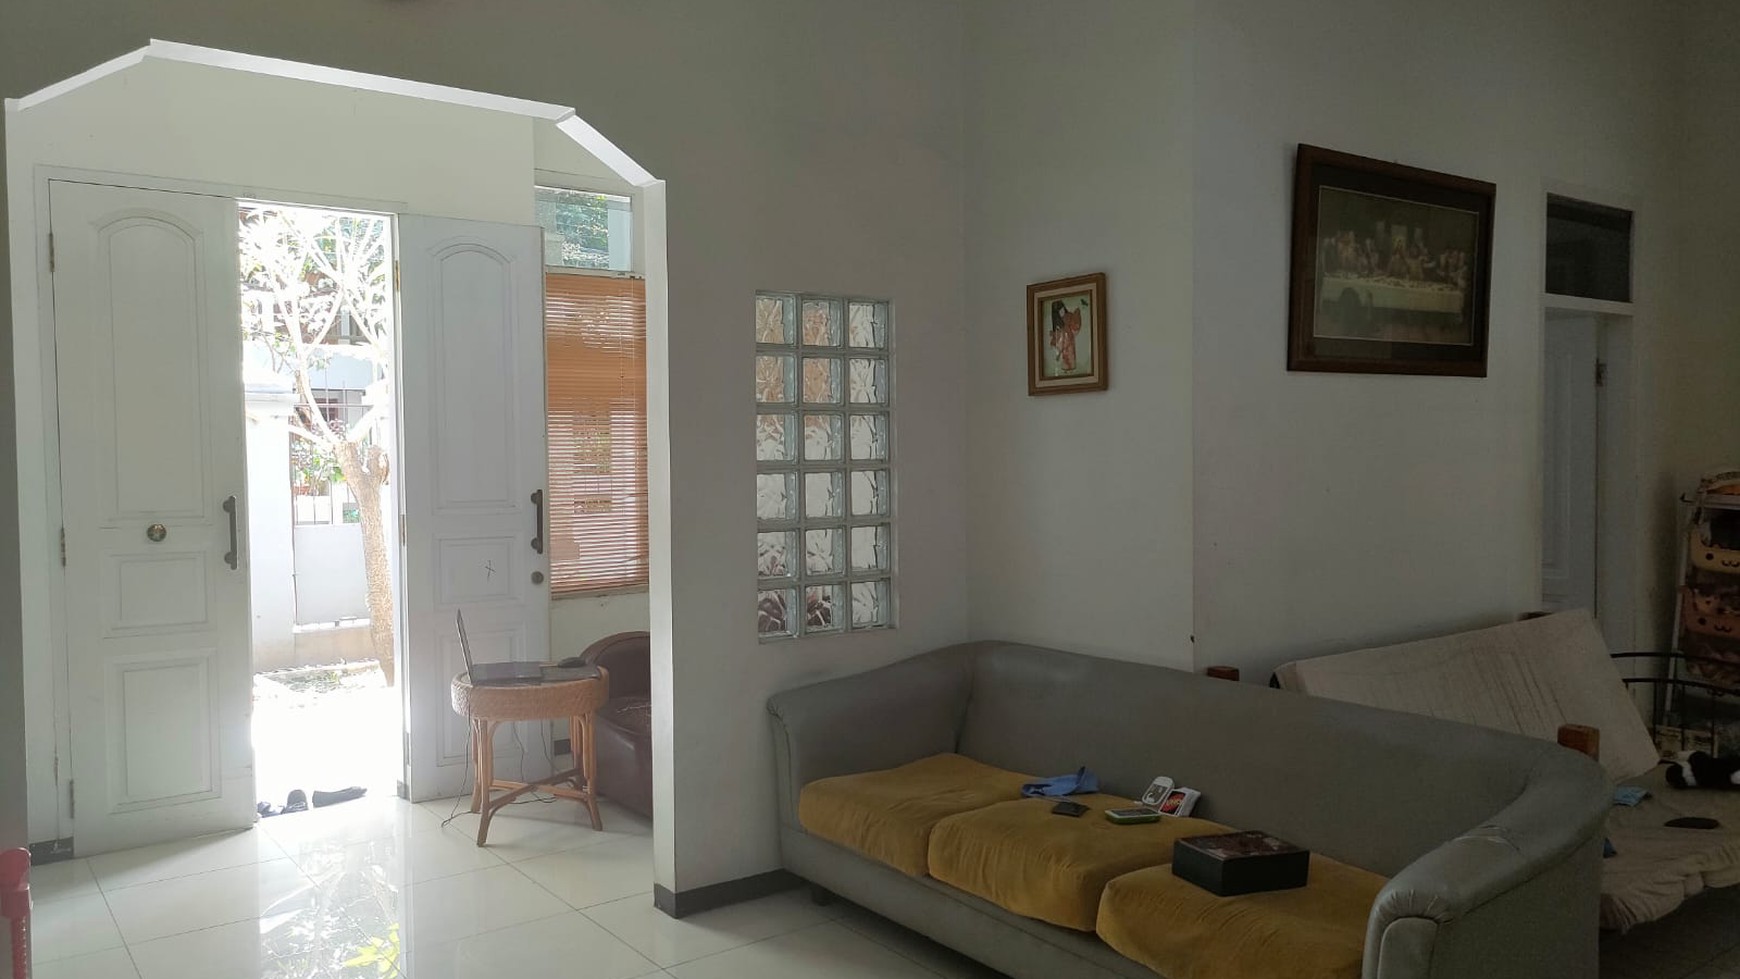 Rumah Bagus Semi Furnished di Sayap Batununggal Bandung